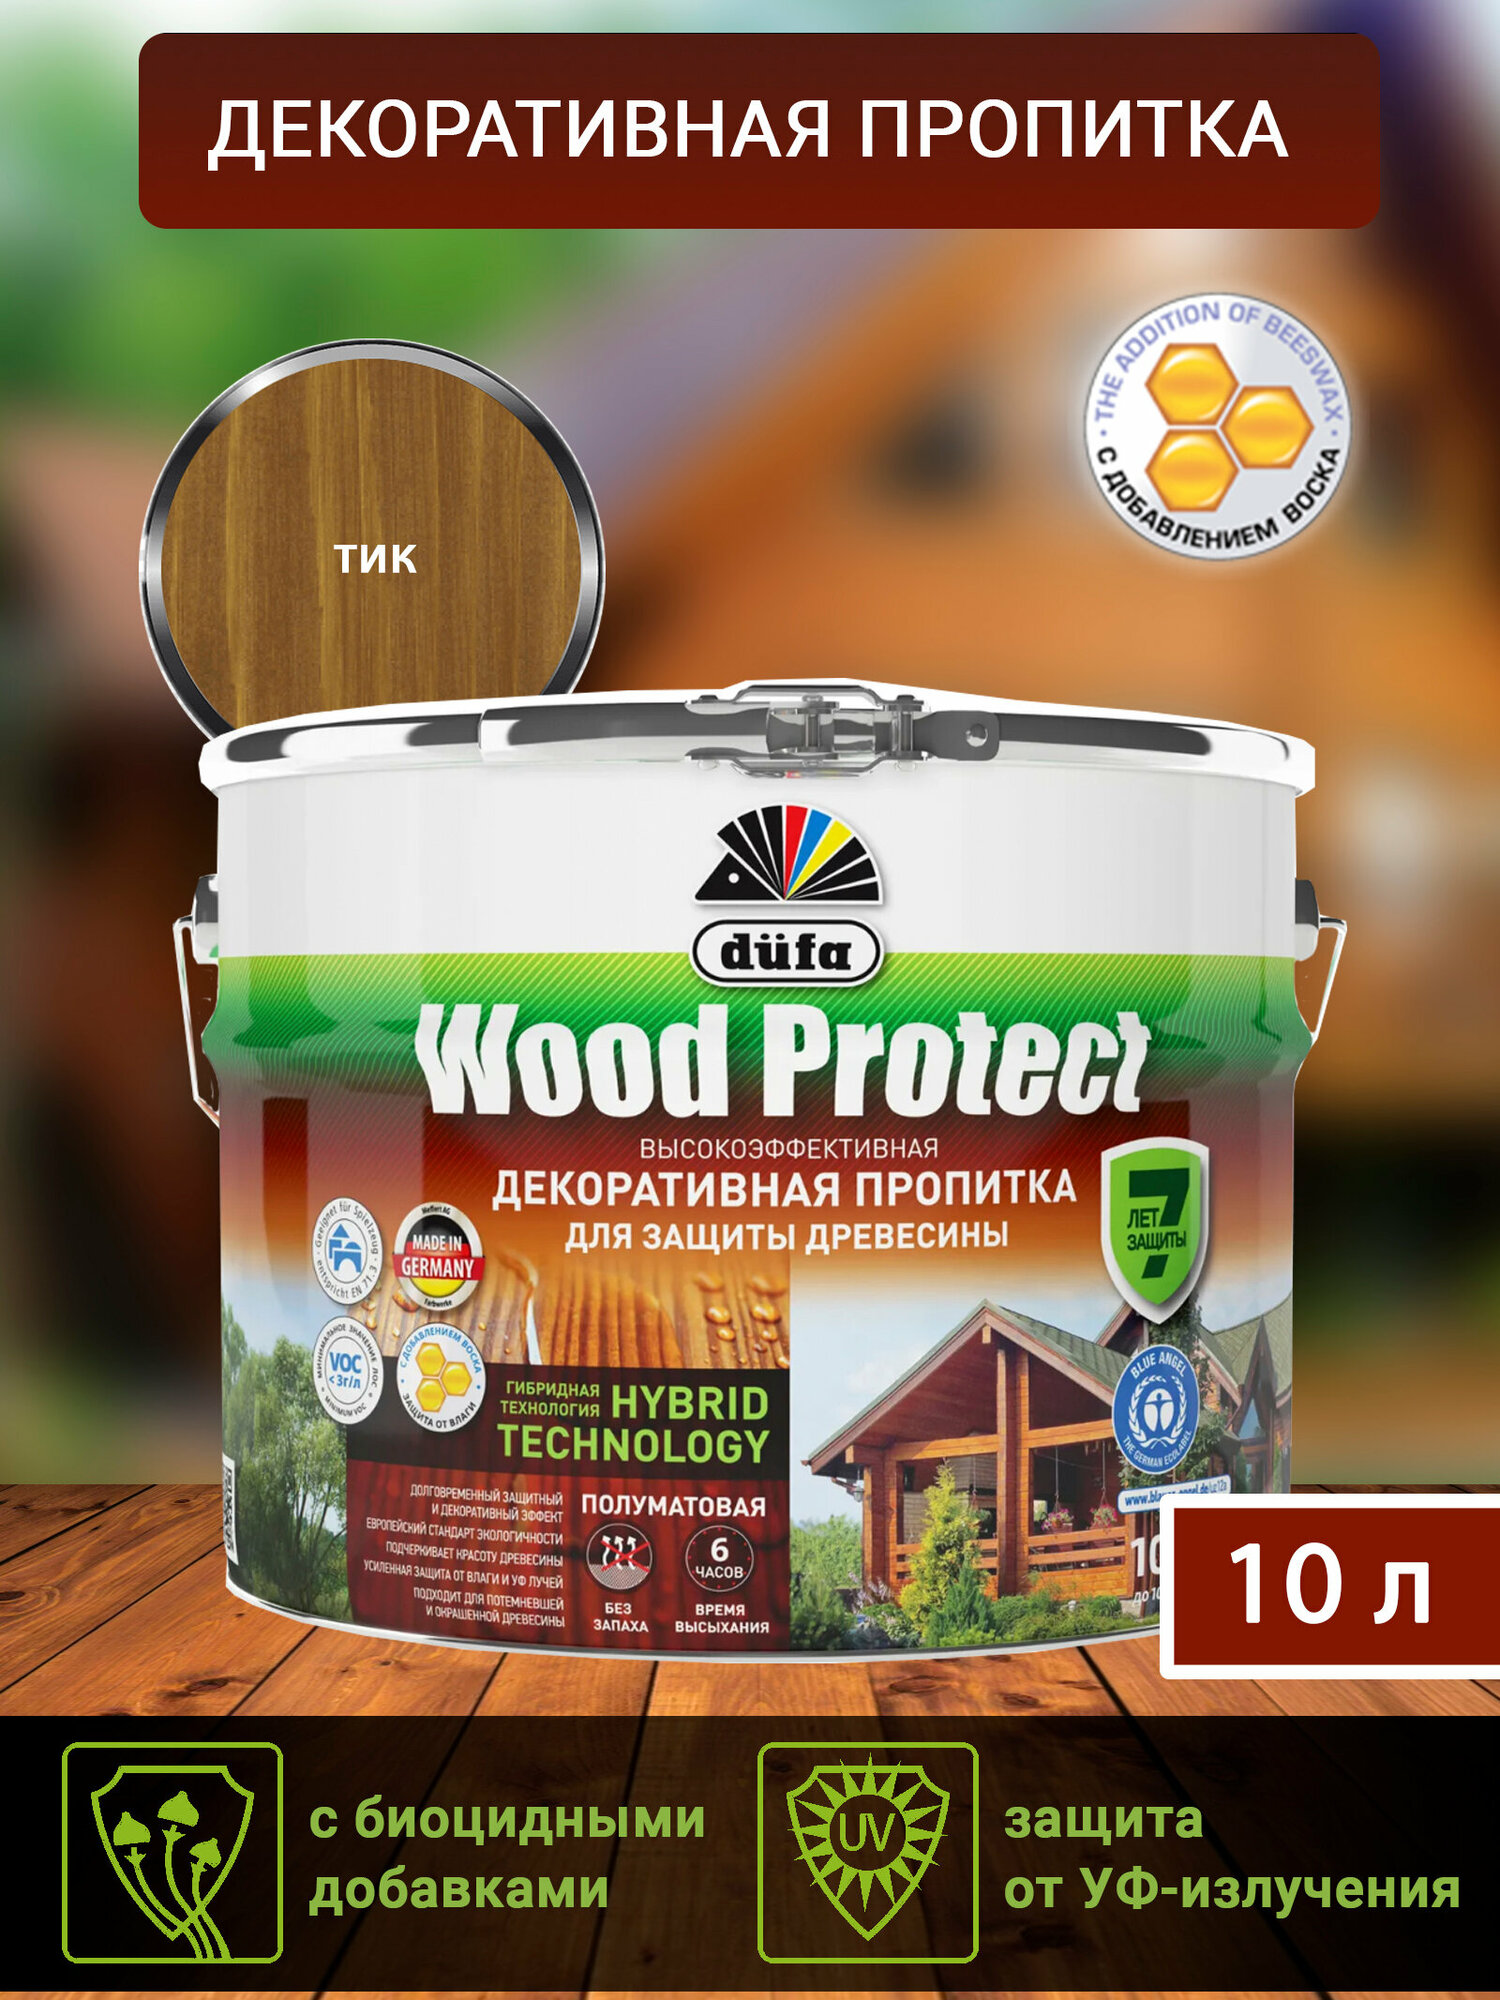 Пропитка декоративная для защиты древесины Dufa Wood Protect тик 10 л.